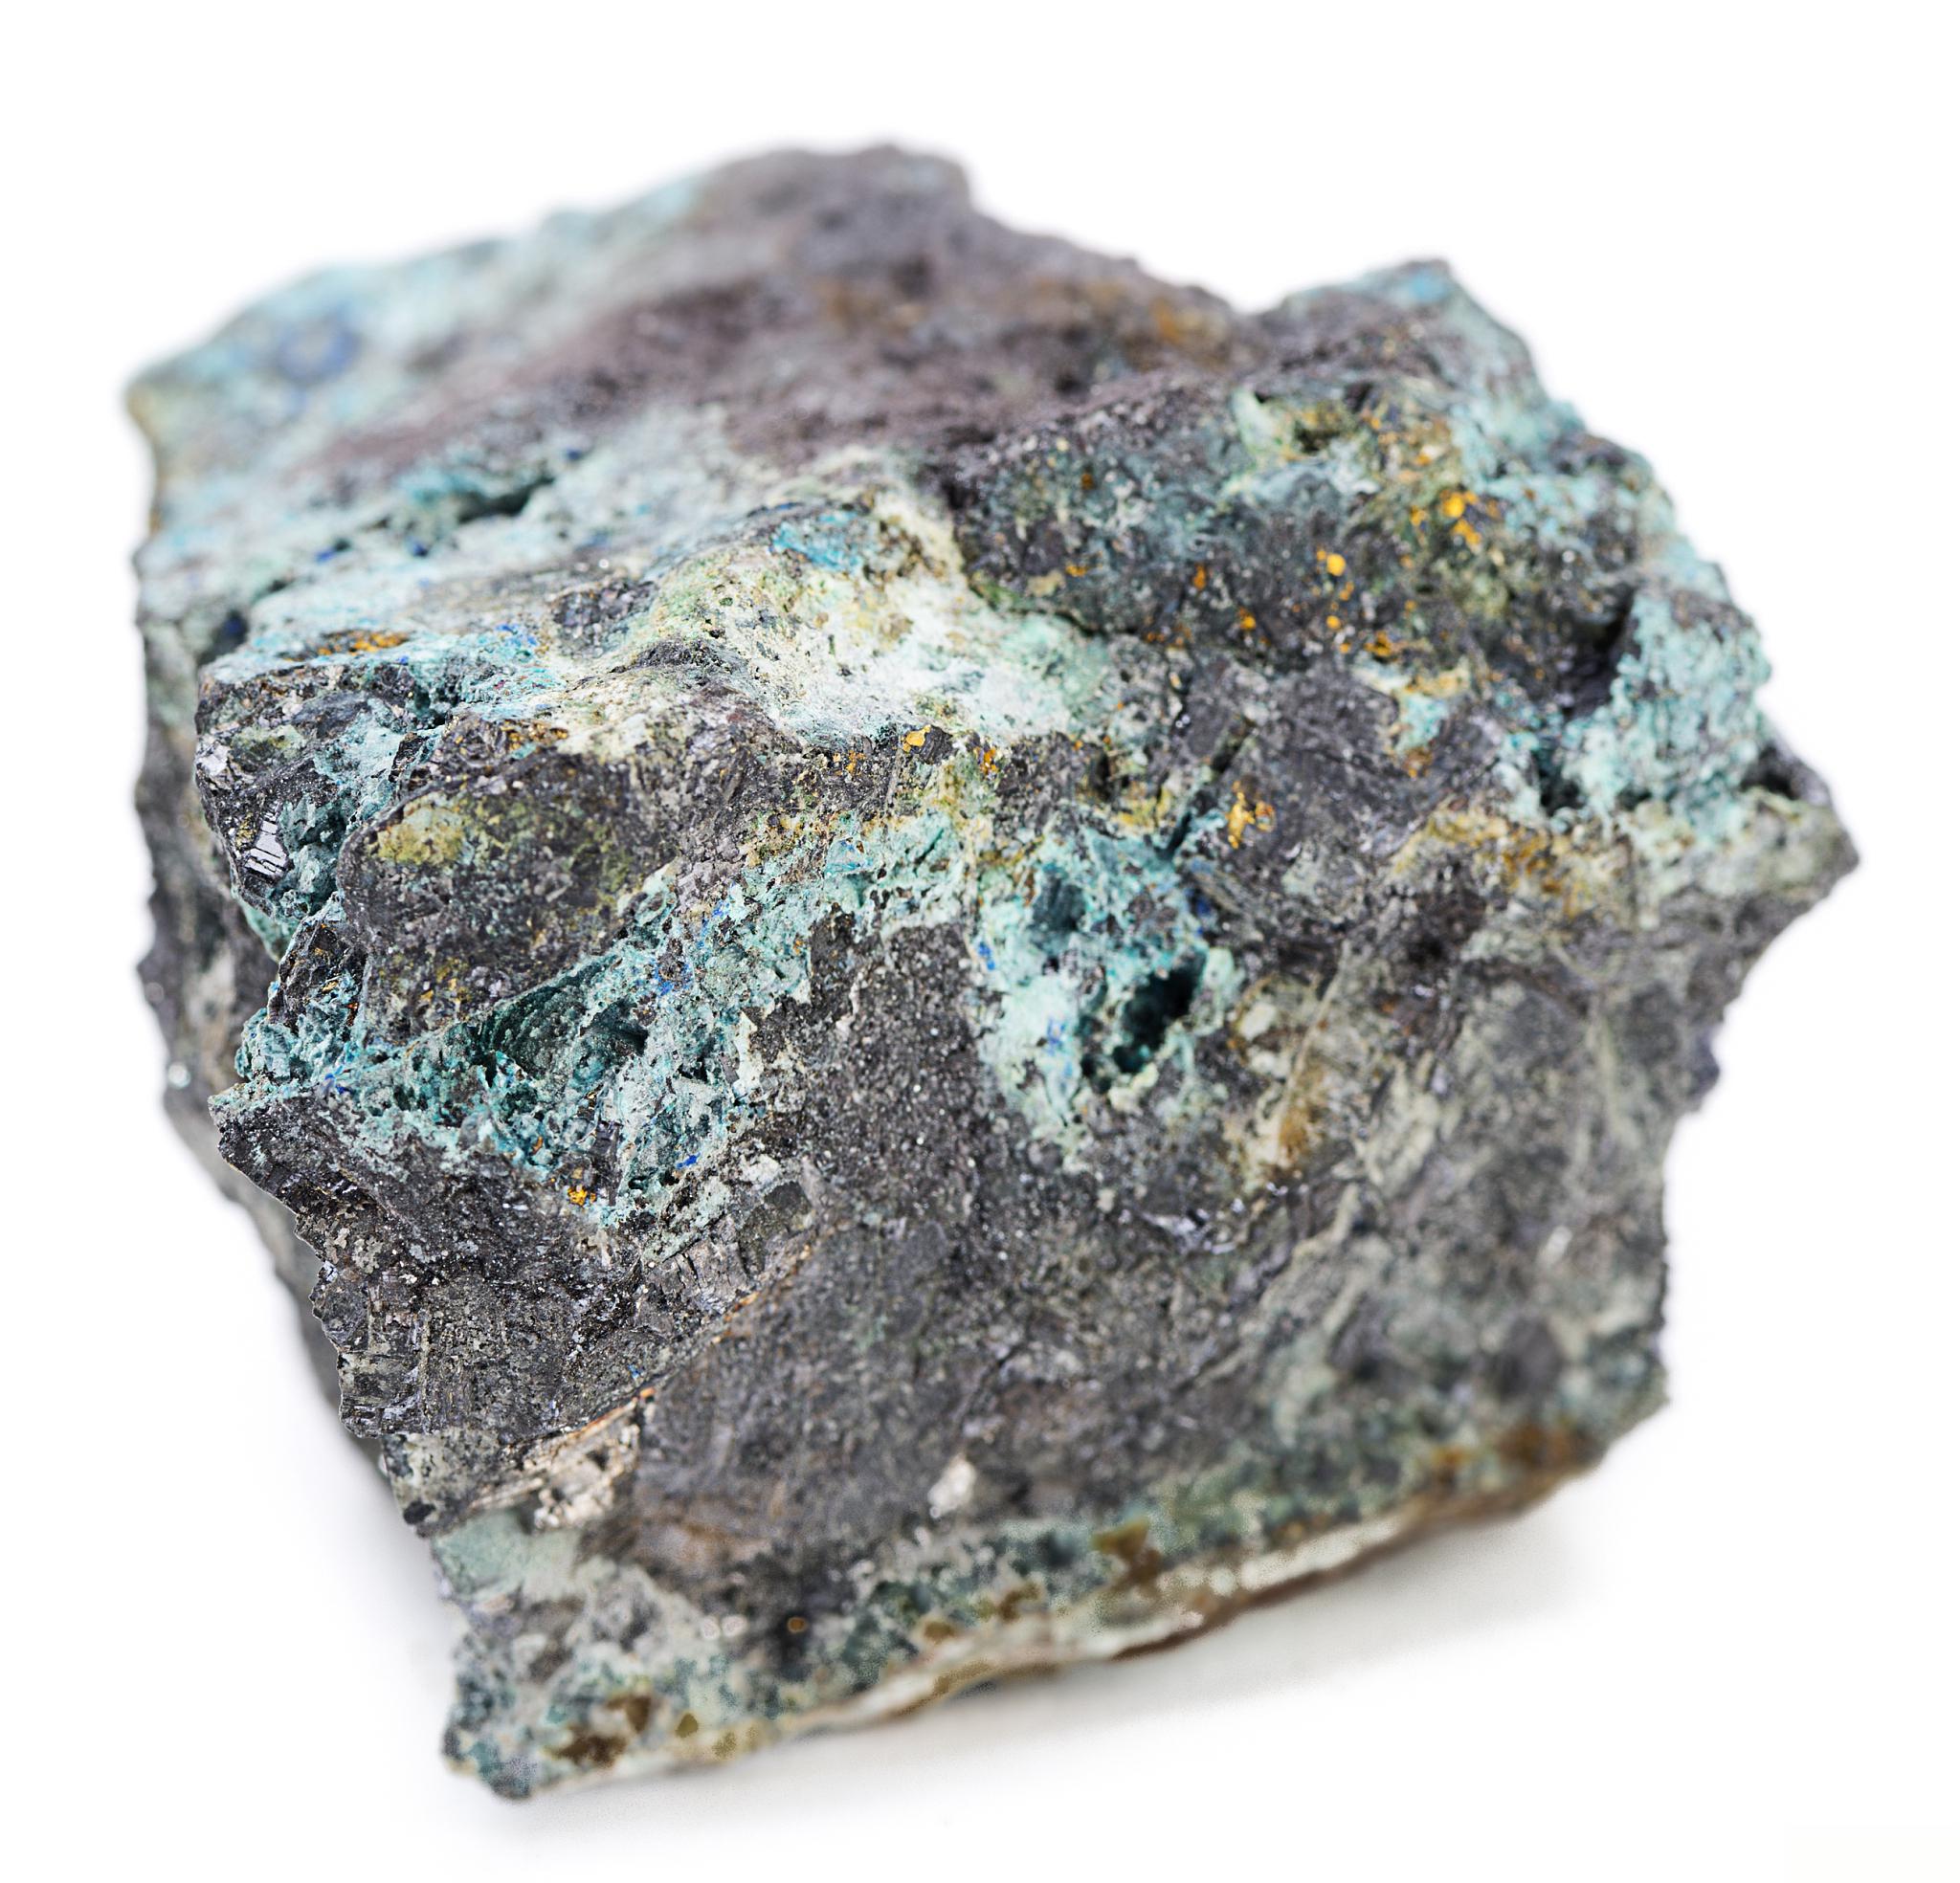 矿石进口清关代理:钽铌矿进口流程 钽铌矿是一种稀有金属矿,具有高